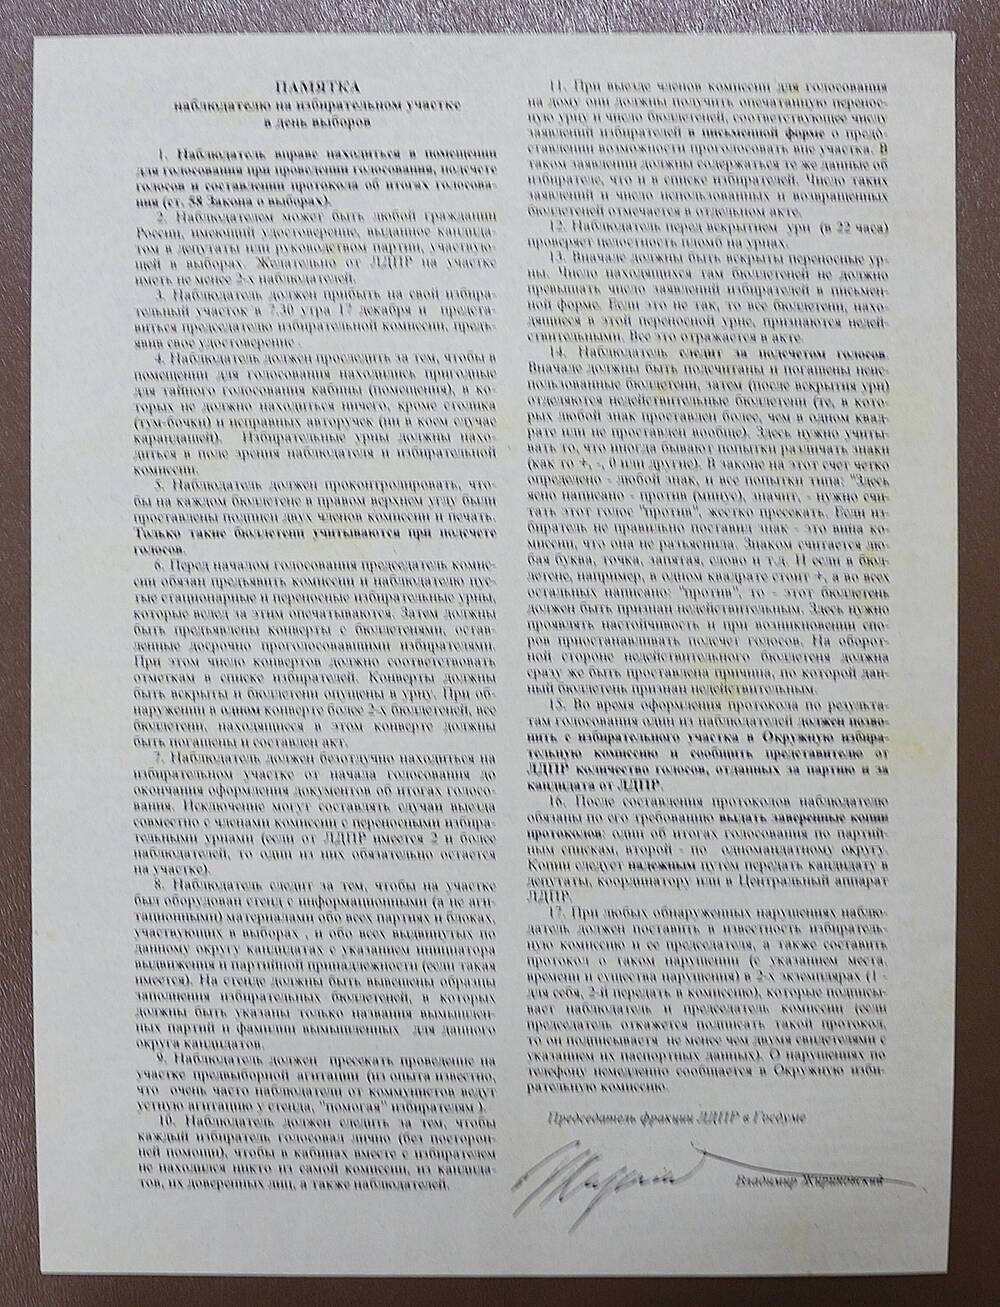 Памятка наблюдателю на избирательном участке, подписана В. Жириновским